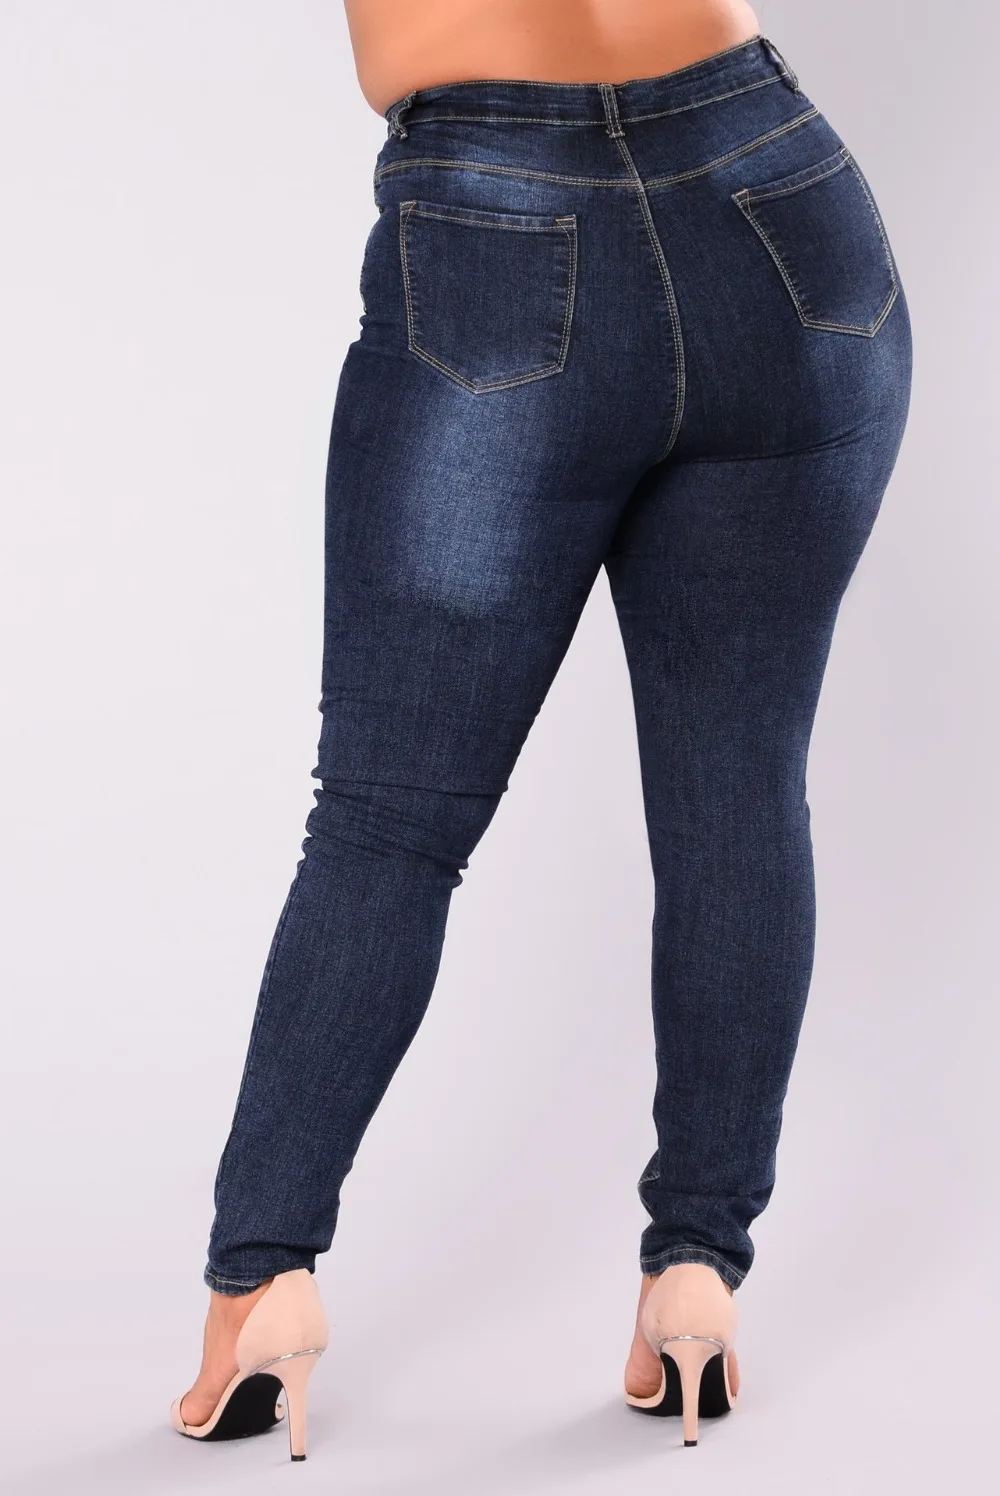 Женские основные плюс размеры Высокая талия Леггинсы Эластичный пять карманов хлопок Skinning джинсы брюки для девочек 4XL 5XL 6XL 7XL